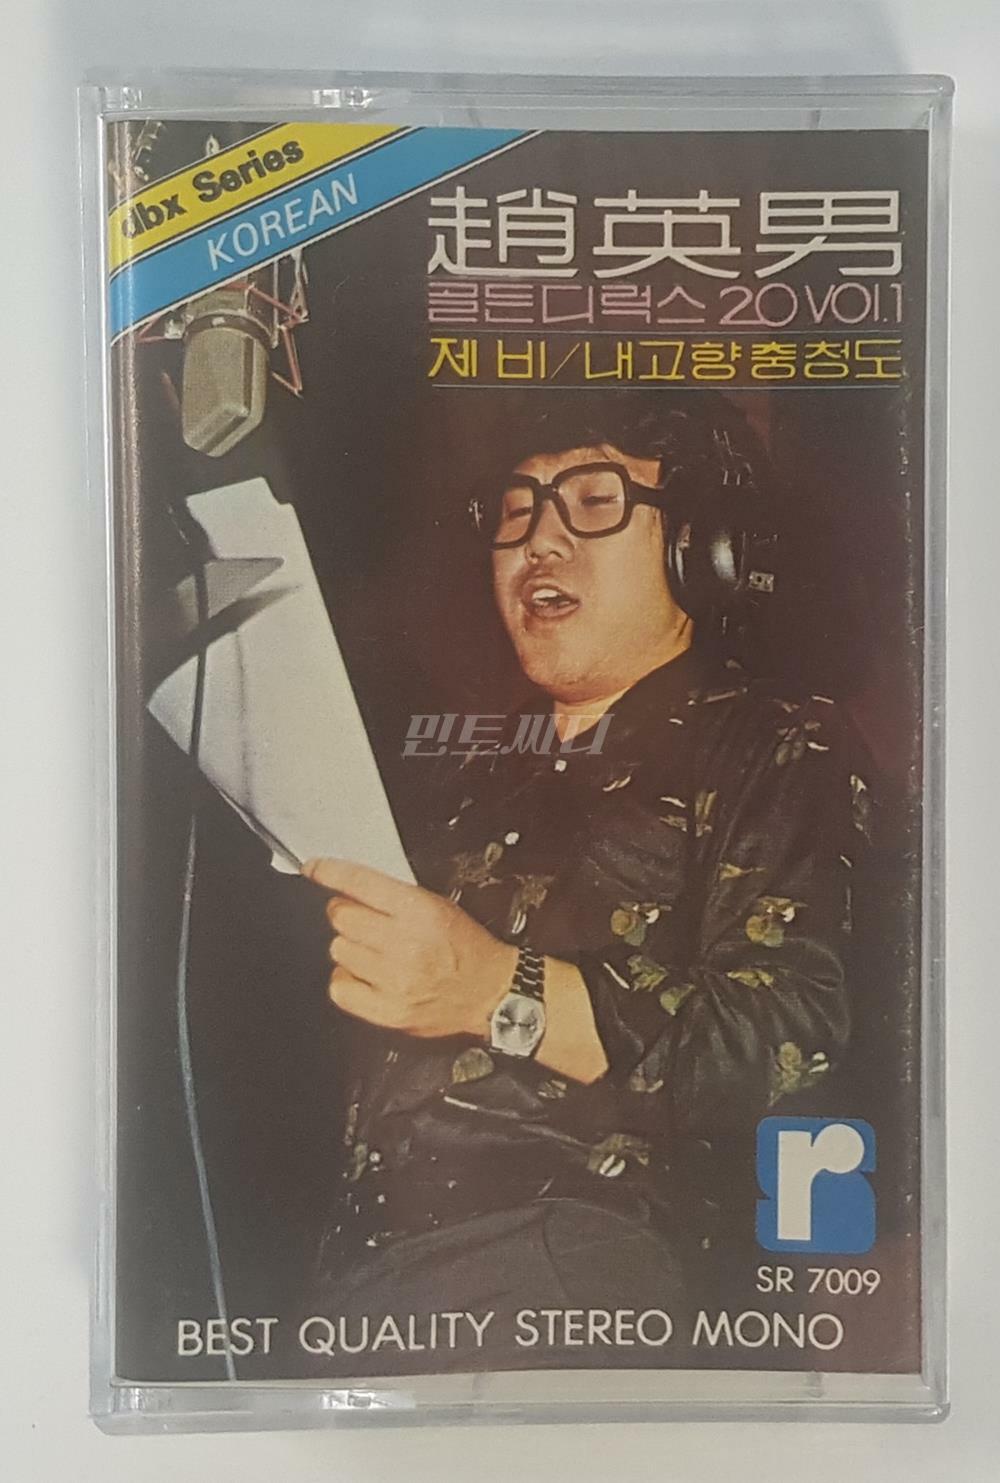 [중고] [카세트 테이프] 조영남 - 골든디럭스 20 Vol.1 (제비/내고향 충청도)